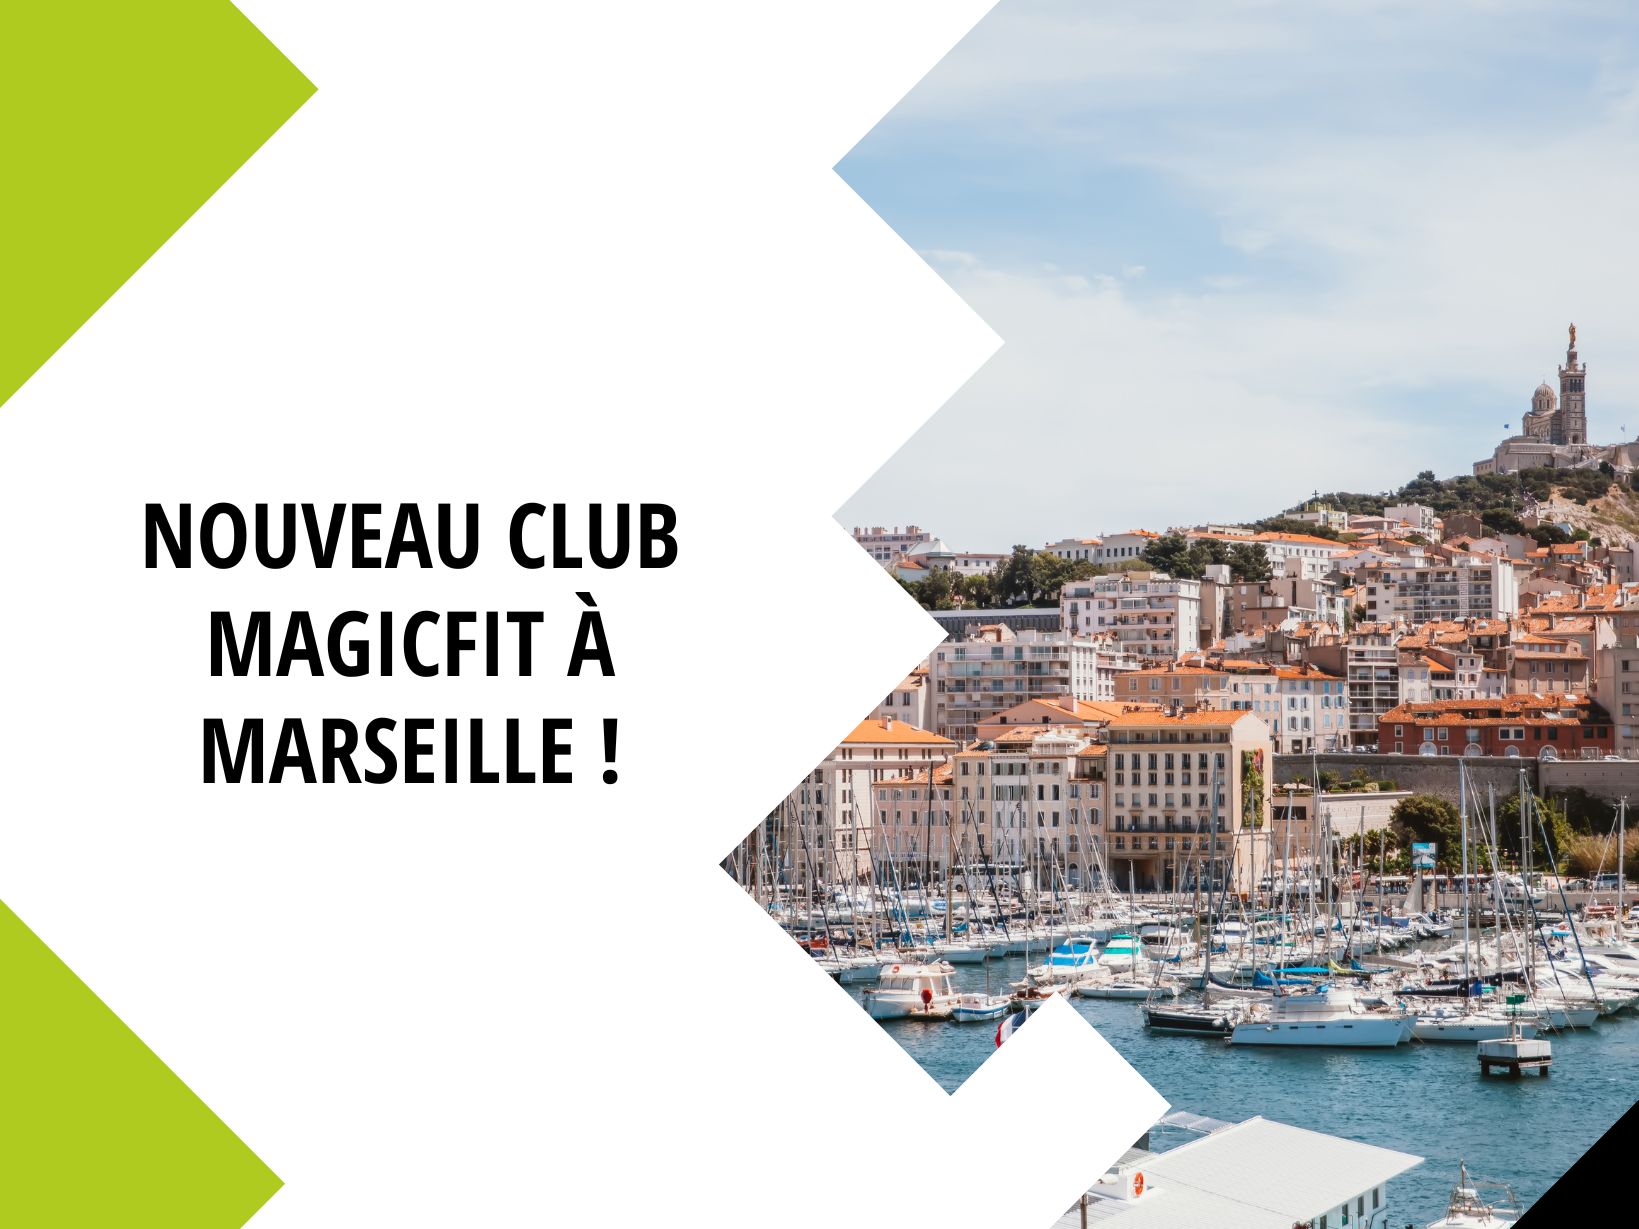 Magicfit Marseille